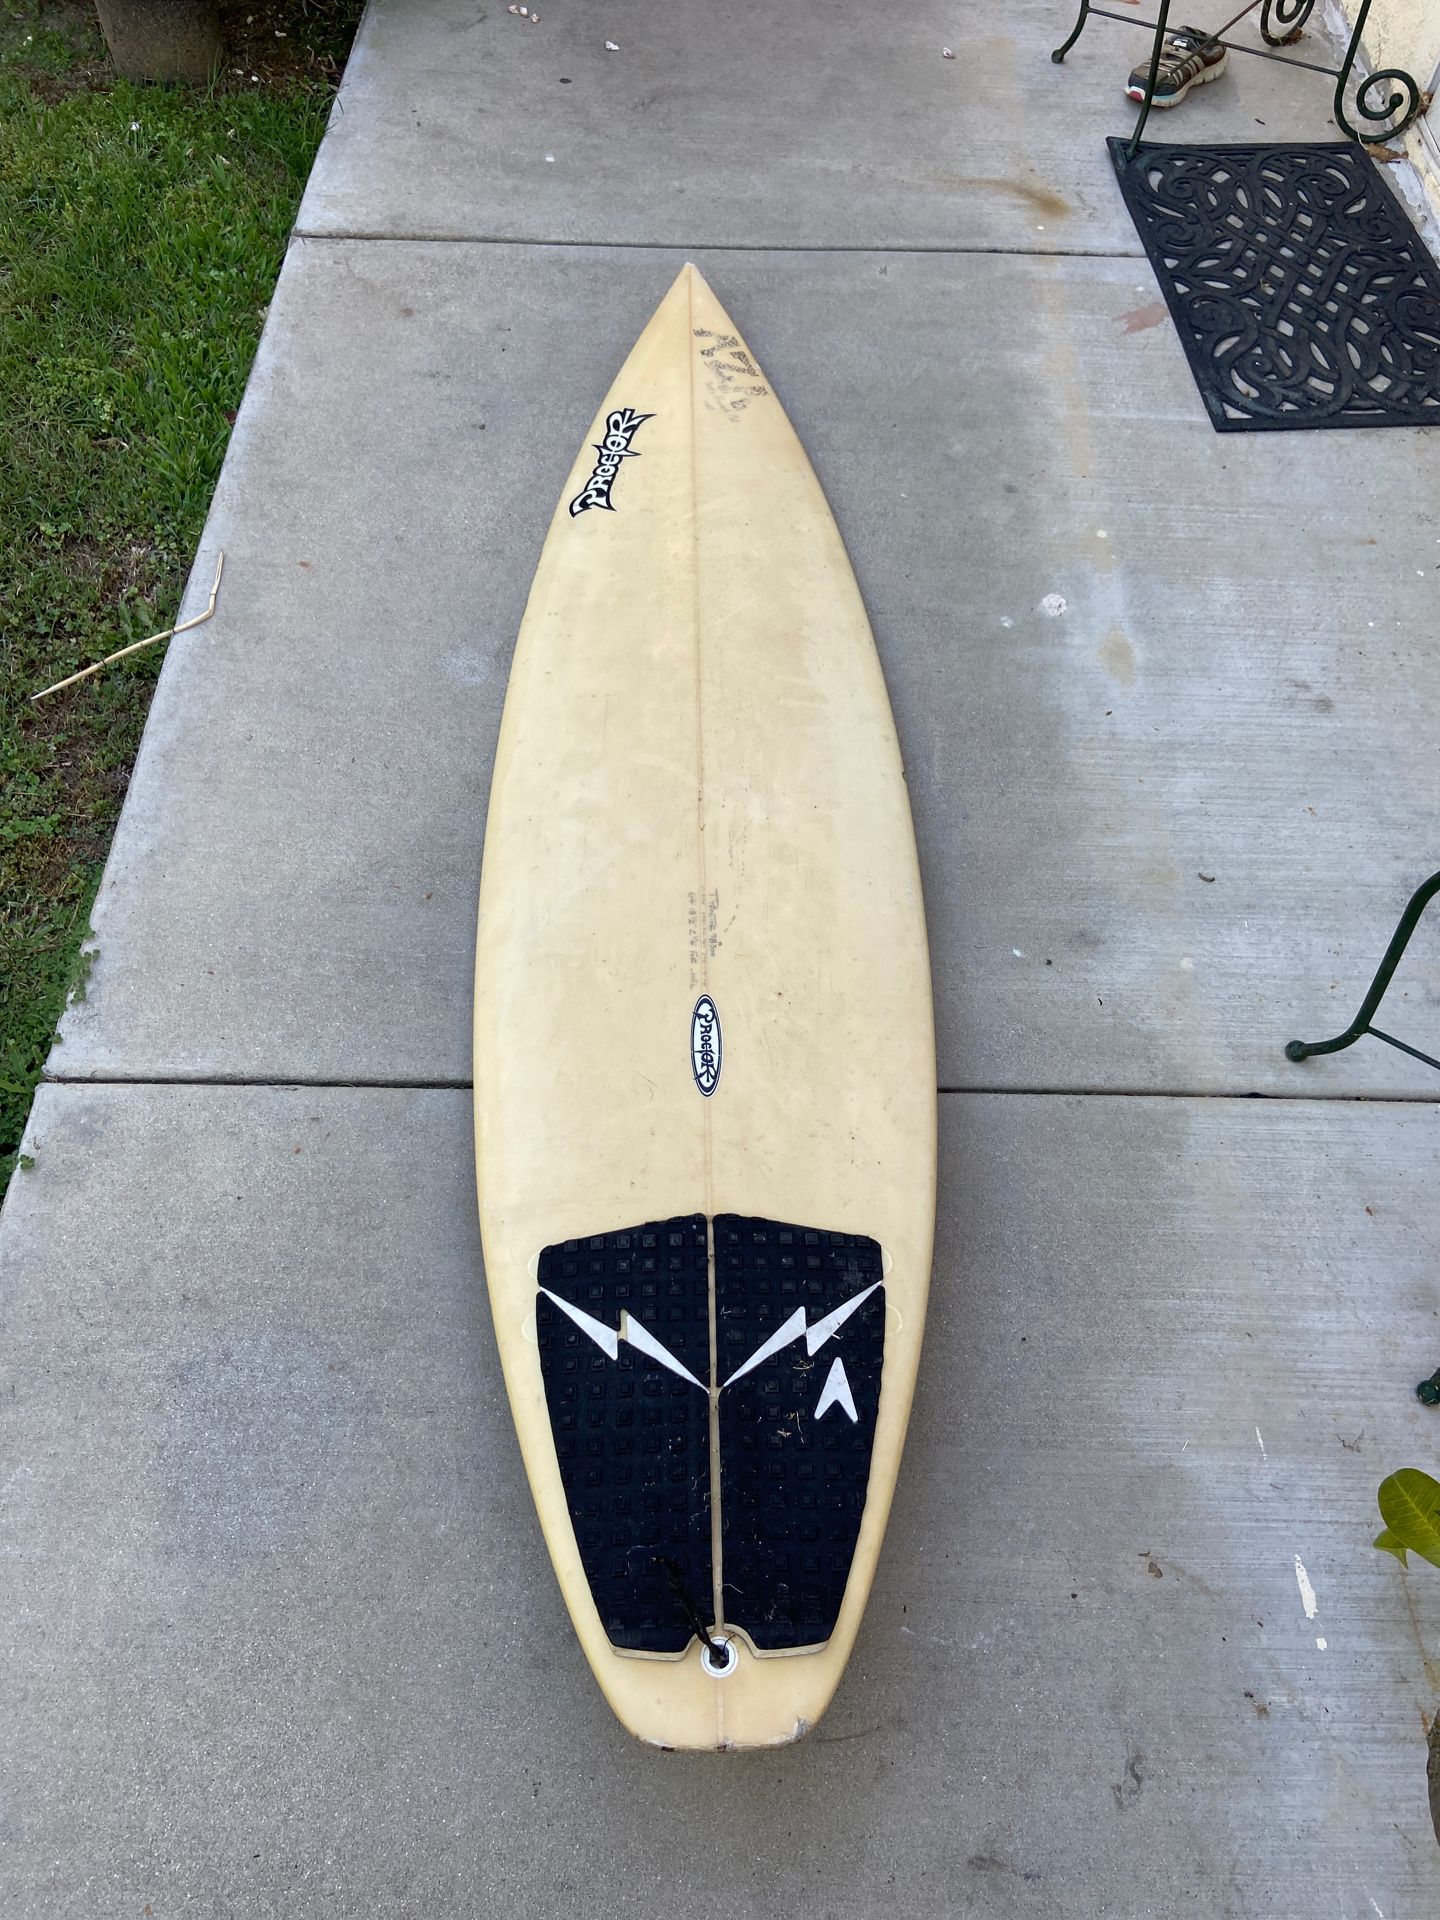 Proctor Shortboard Surfboard 6’ 4’’